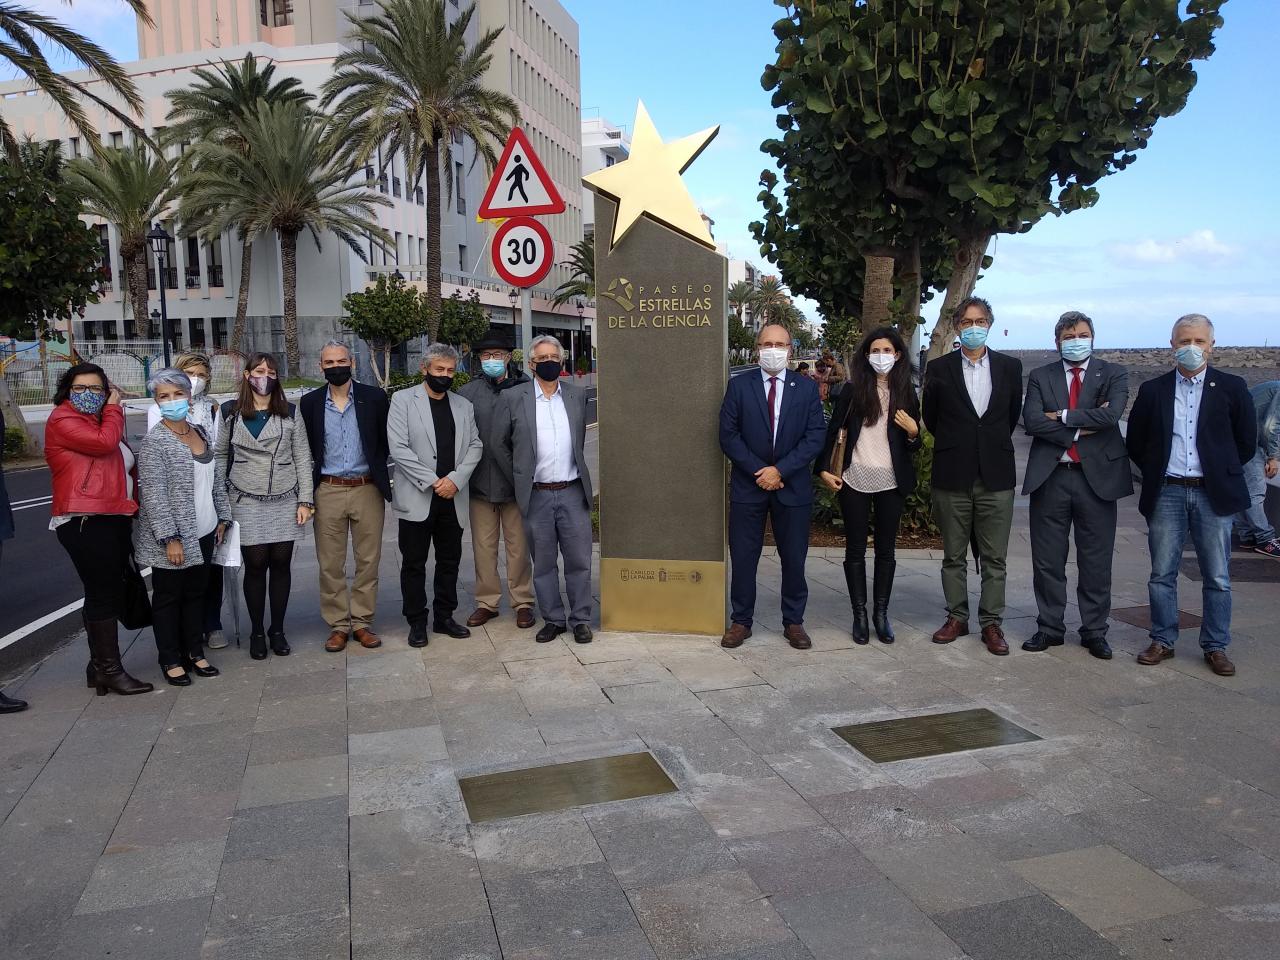 Representantes del IAC que han acudido a la inauguración del Paseo de las Estrellas de la Ciencia de La Palma. Crédito: Aarón García Botín/IAC